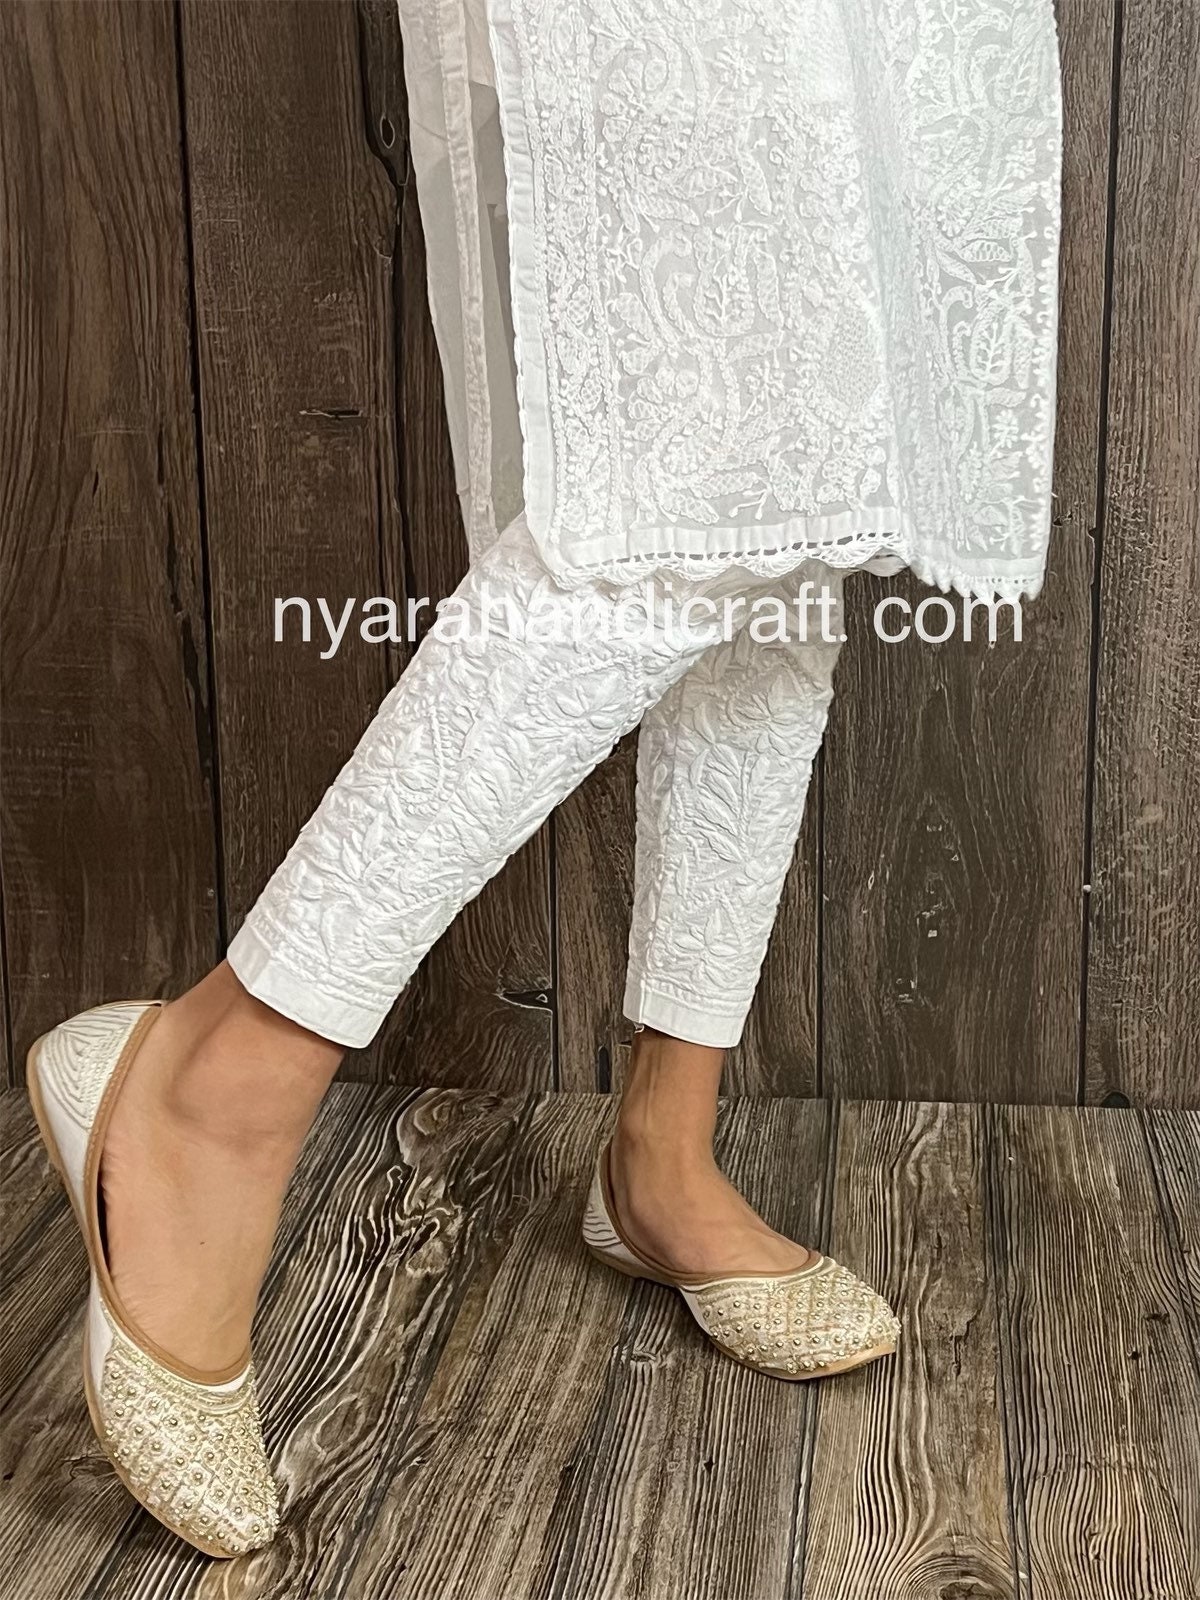 Lux Lyra Kurti Pant (Free Size) White : Amazon.in: Fashion